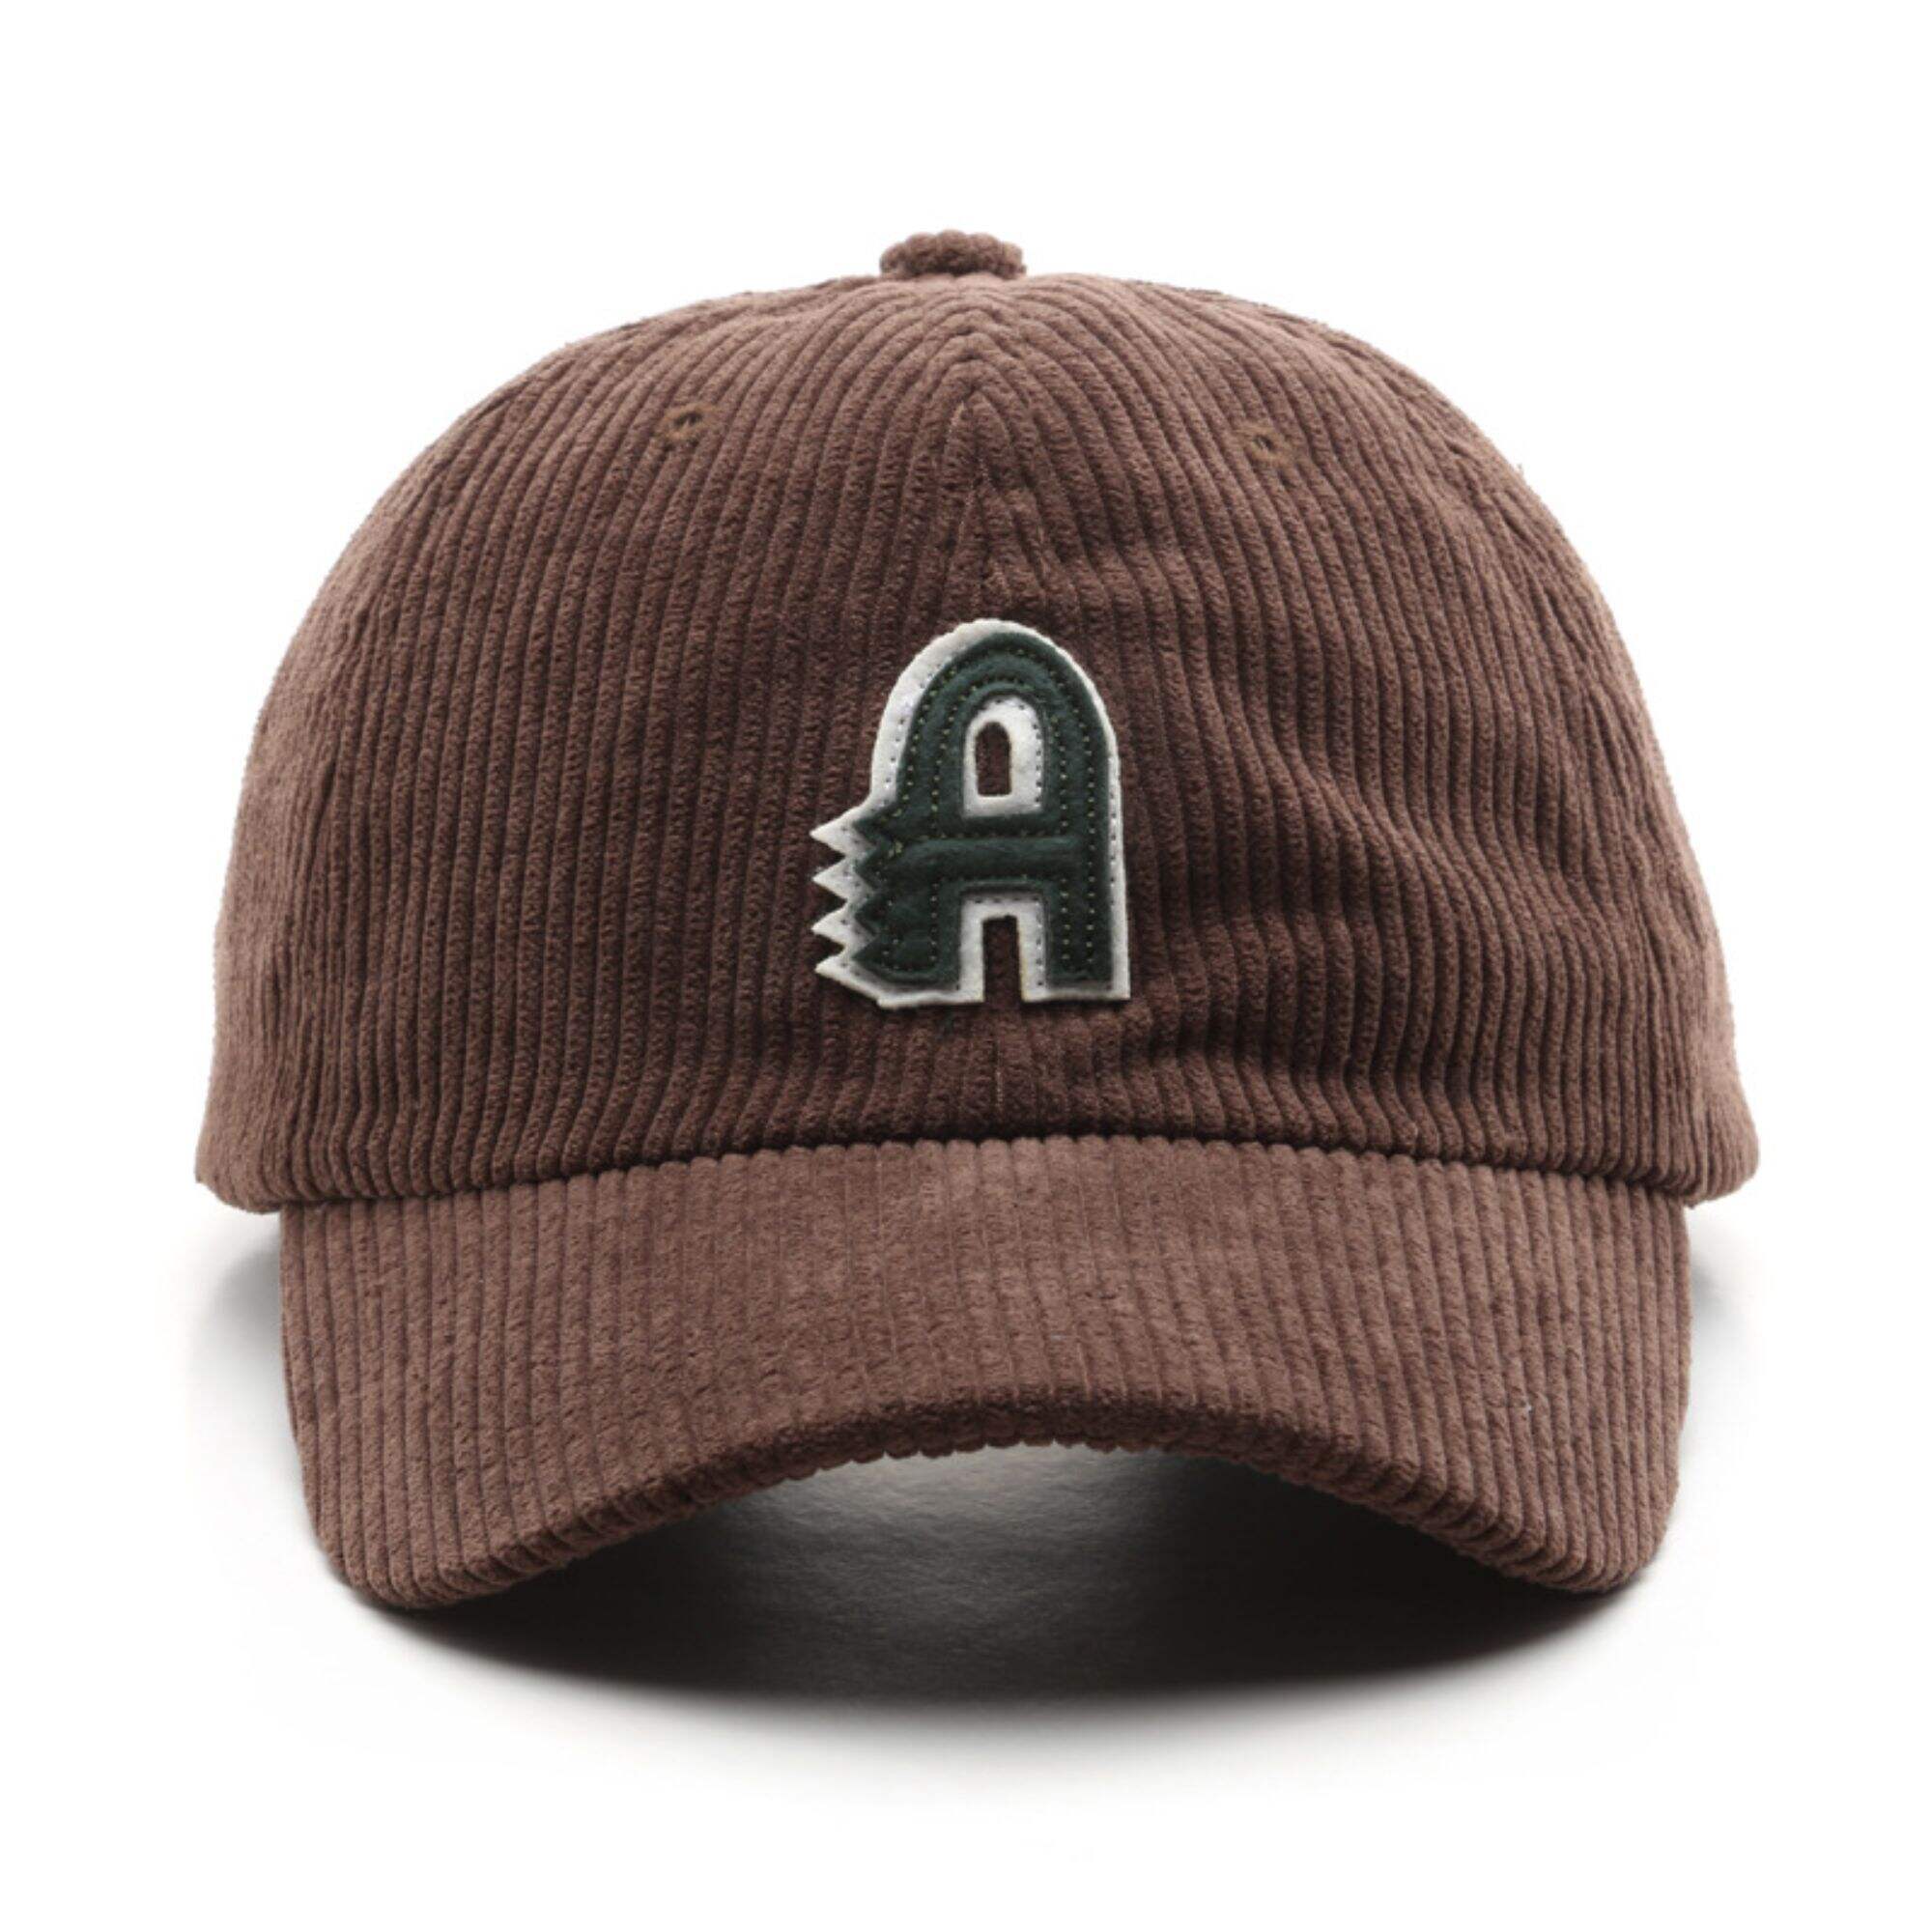 Corduroy applique embroidered baseball cap